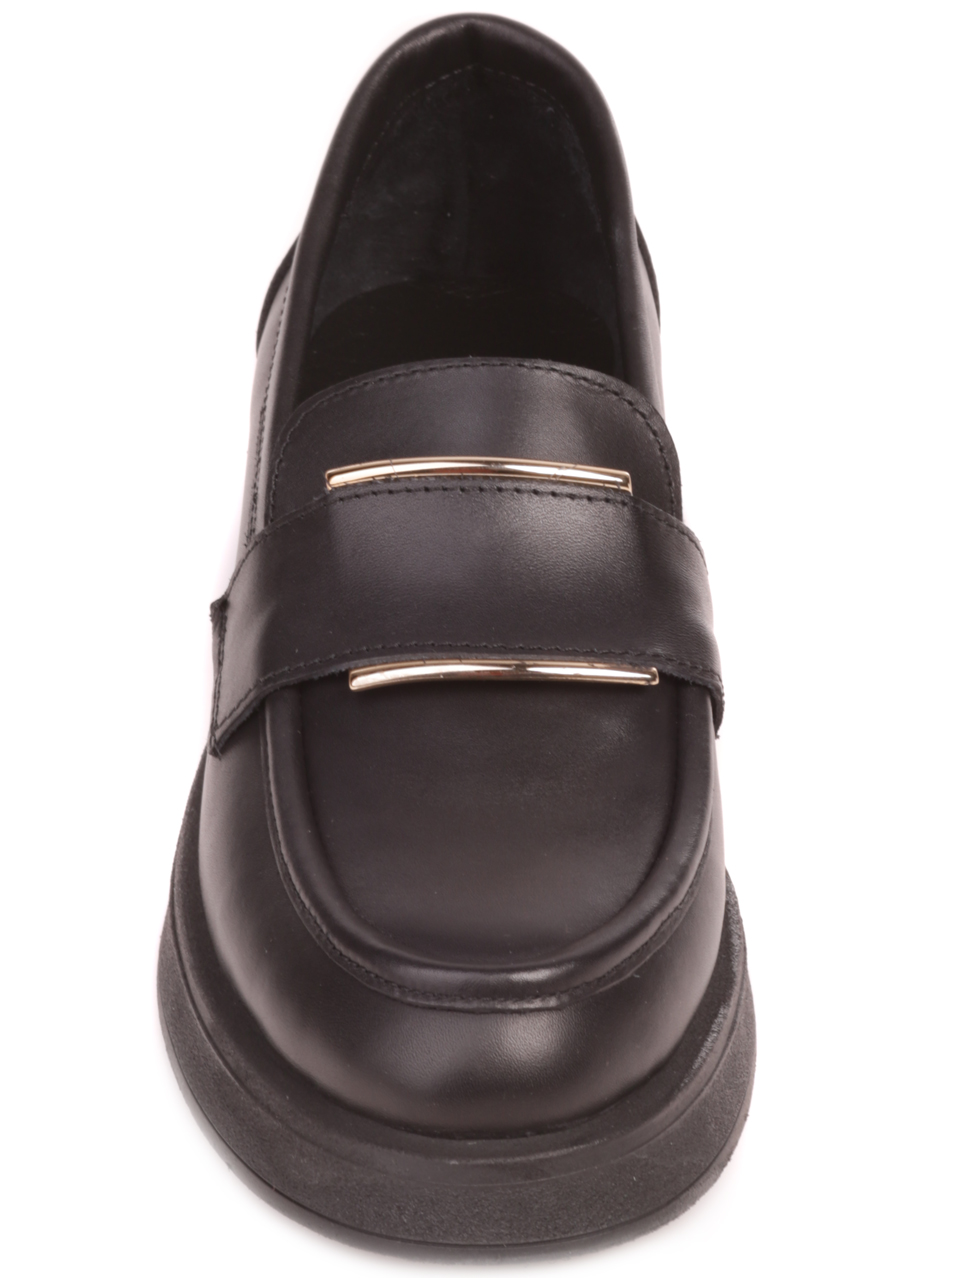 Дамски обувки от естествена кожа в черно 3AT-23762 black